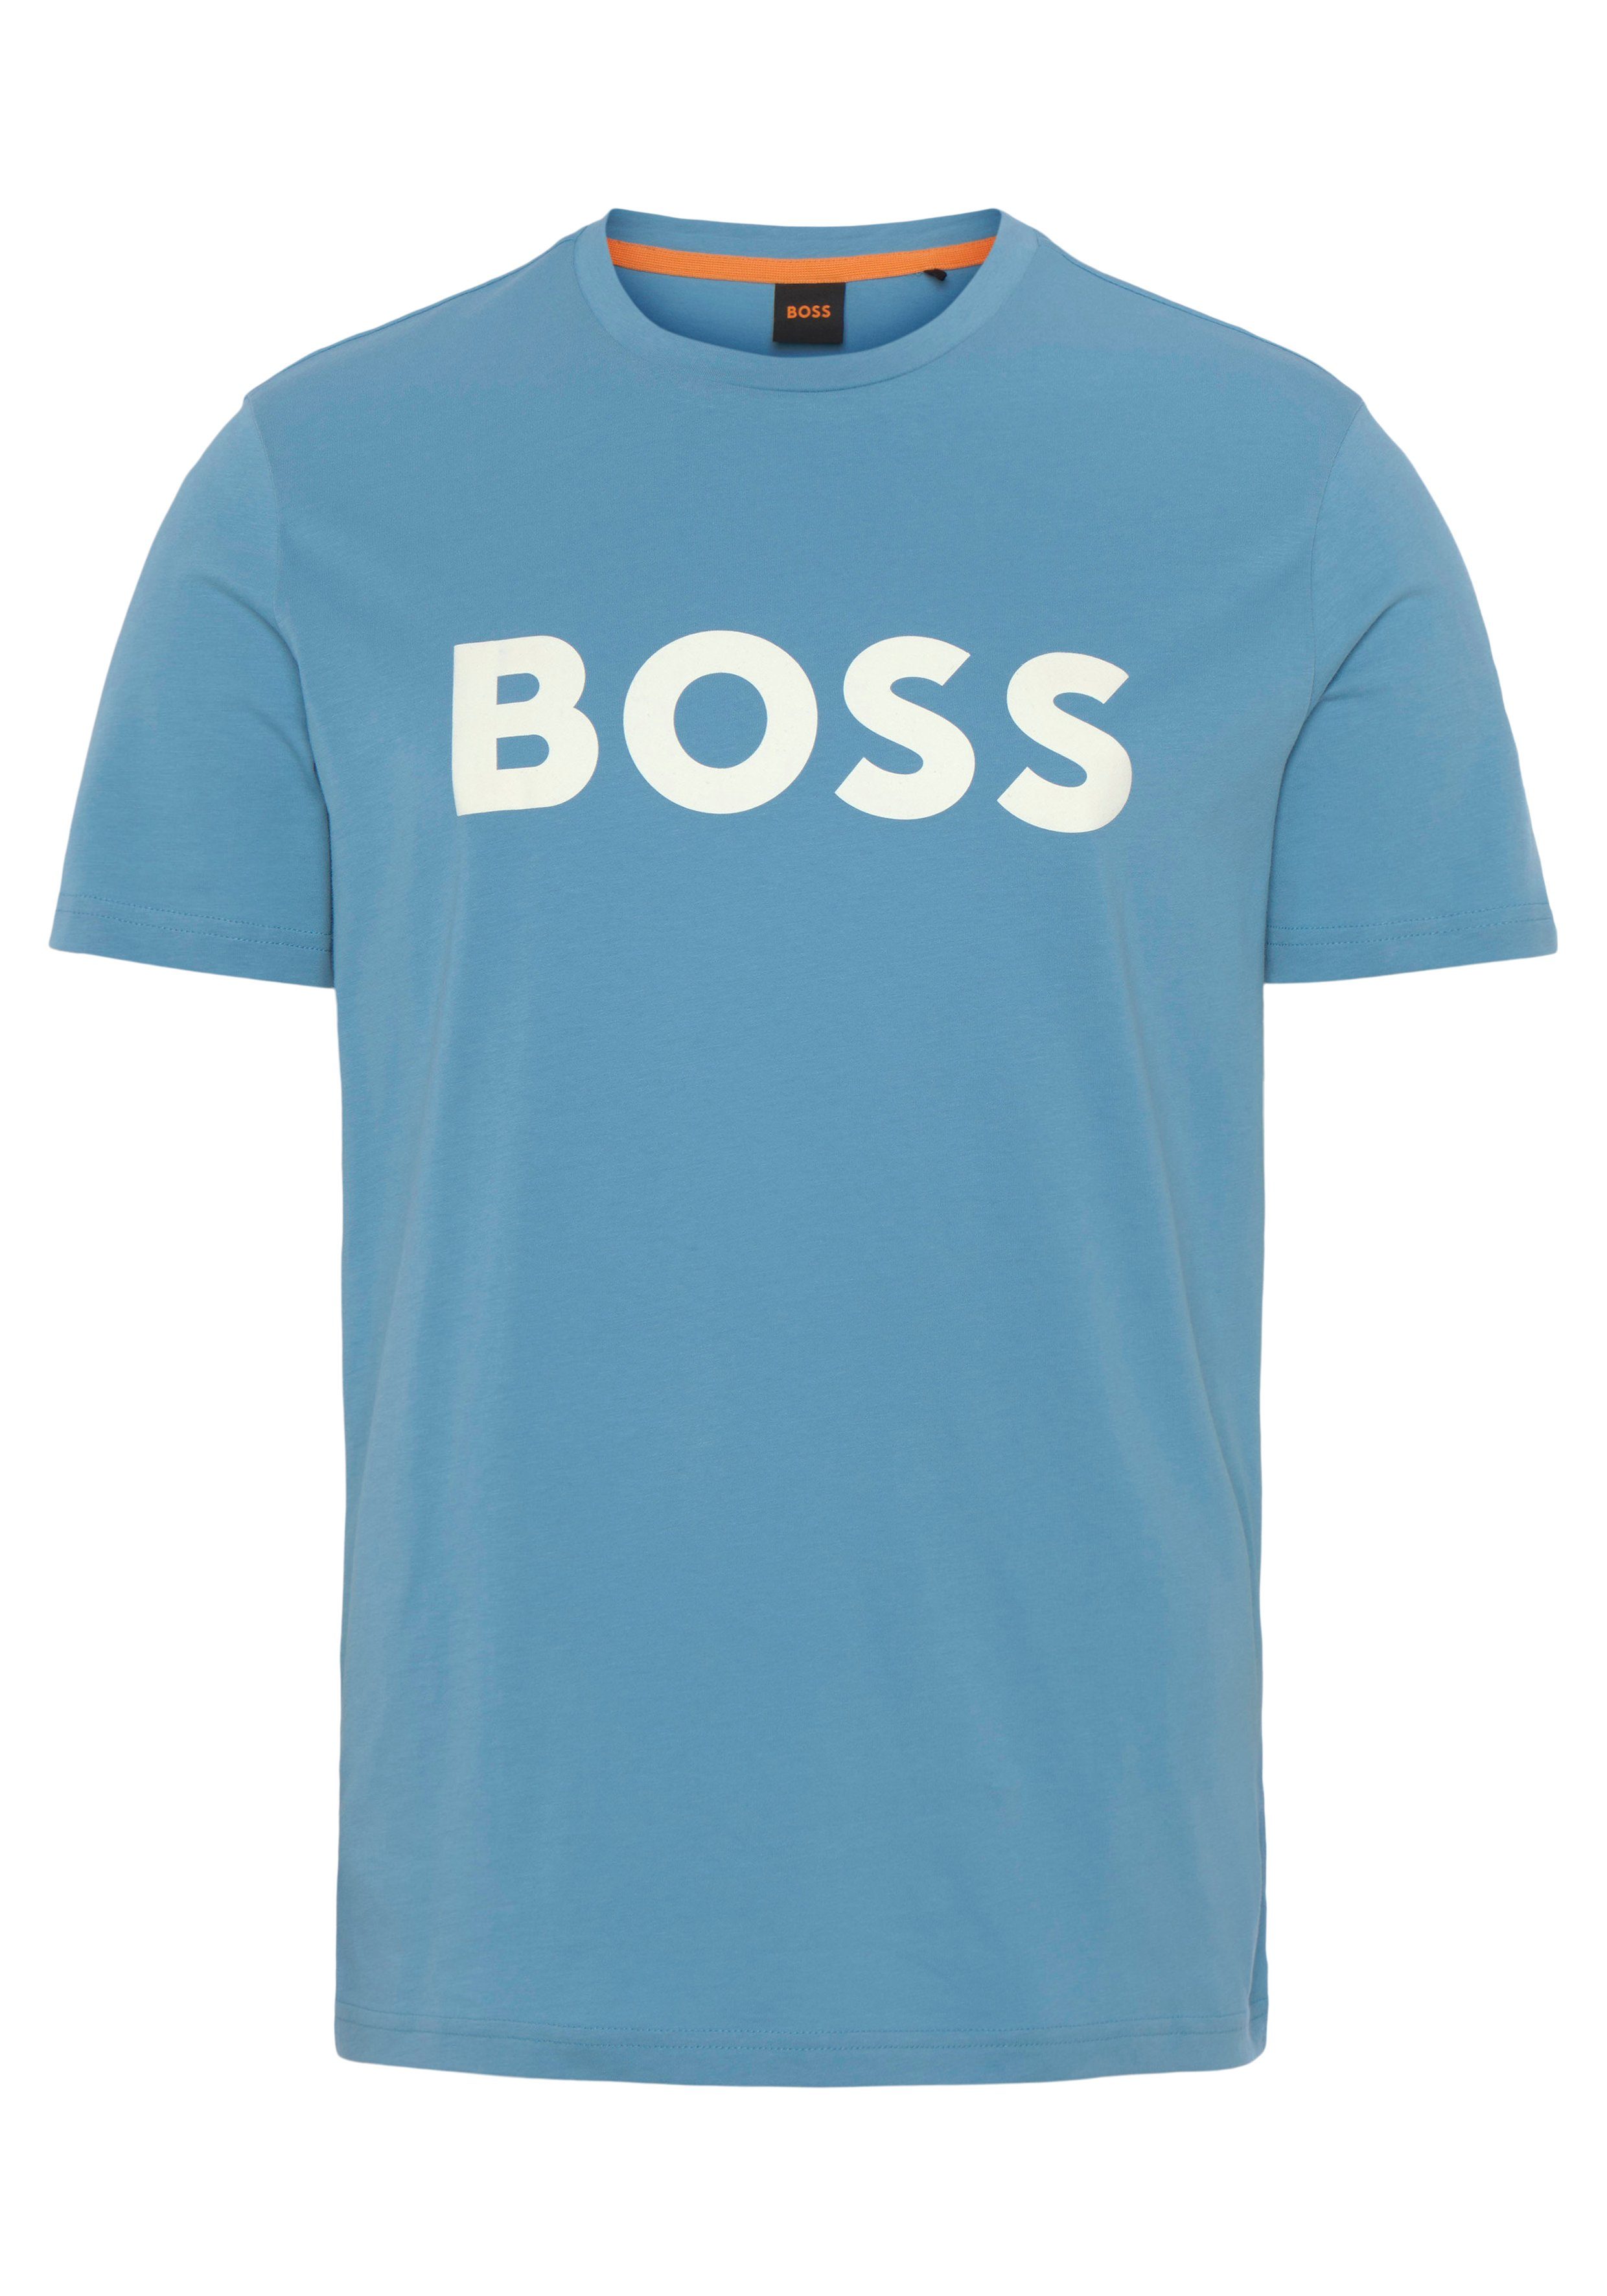 BOSS ORANGE der Blue 1 Open auf Thinking mit großem T-Shirt BOSS 10246016 493 Brust 01 Druck